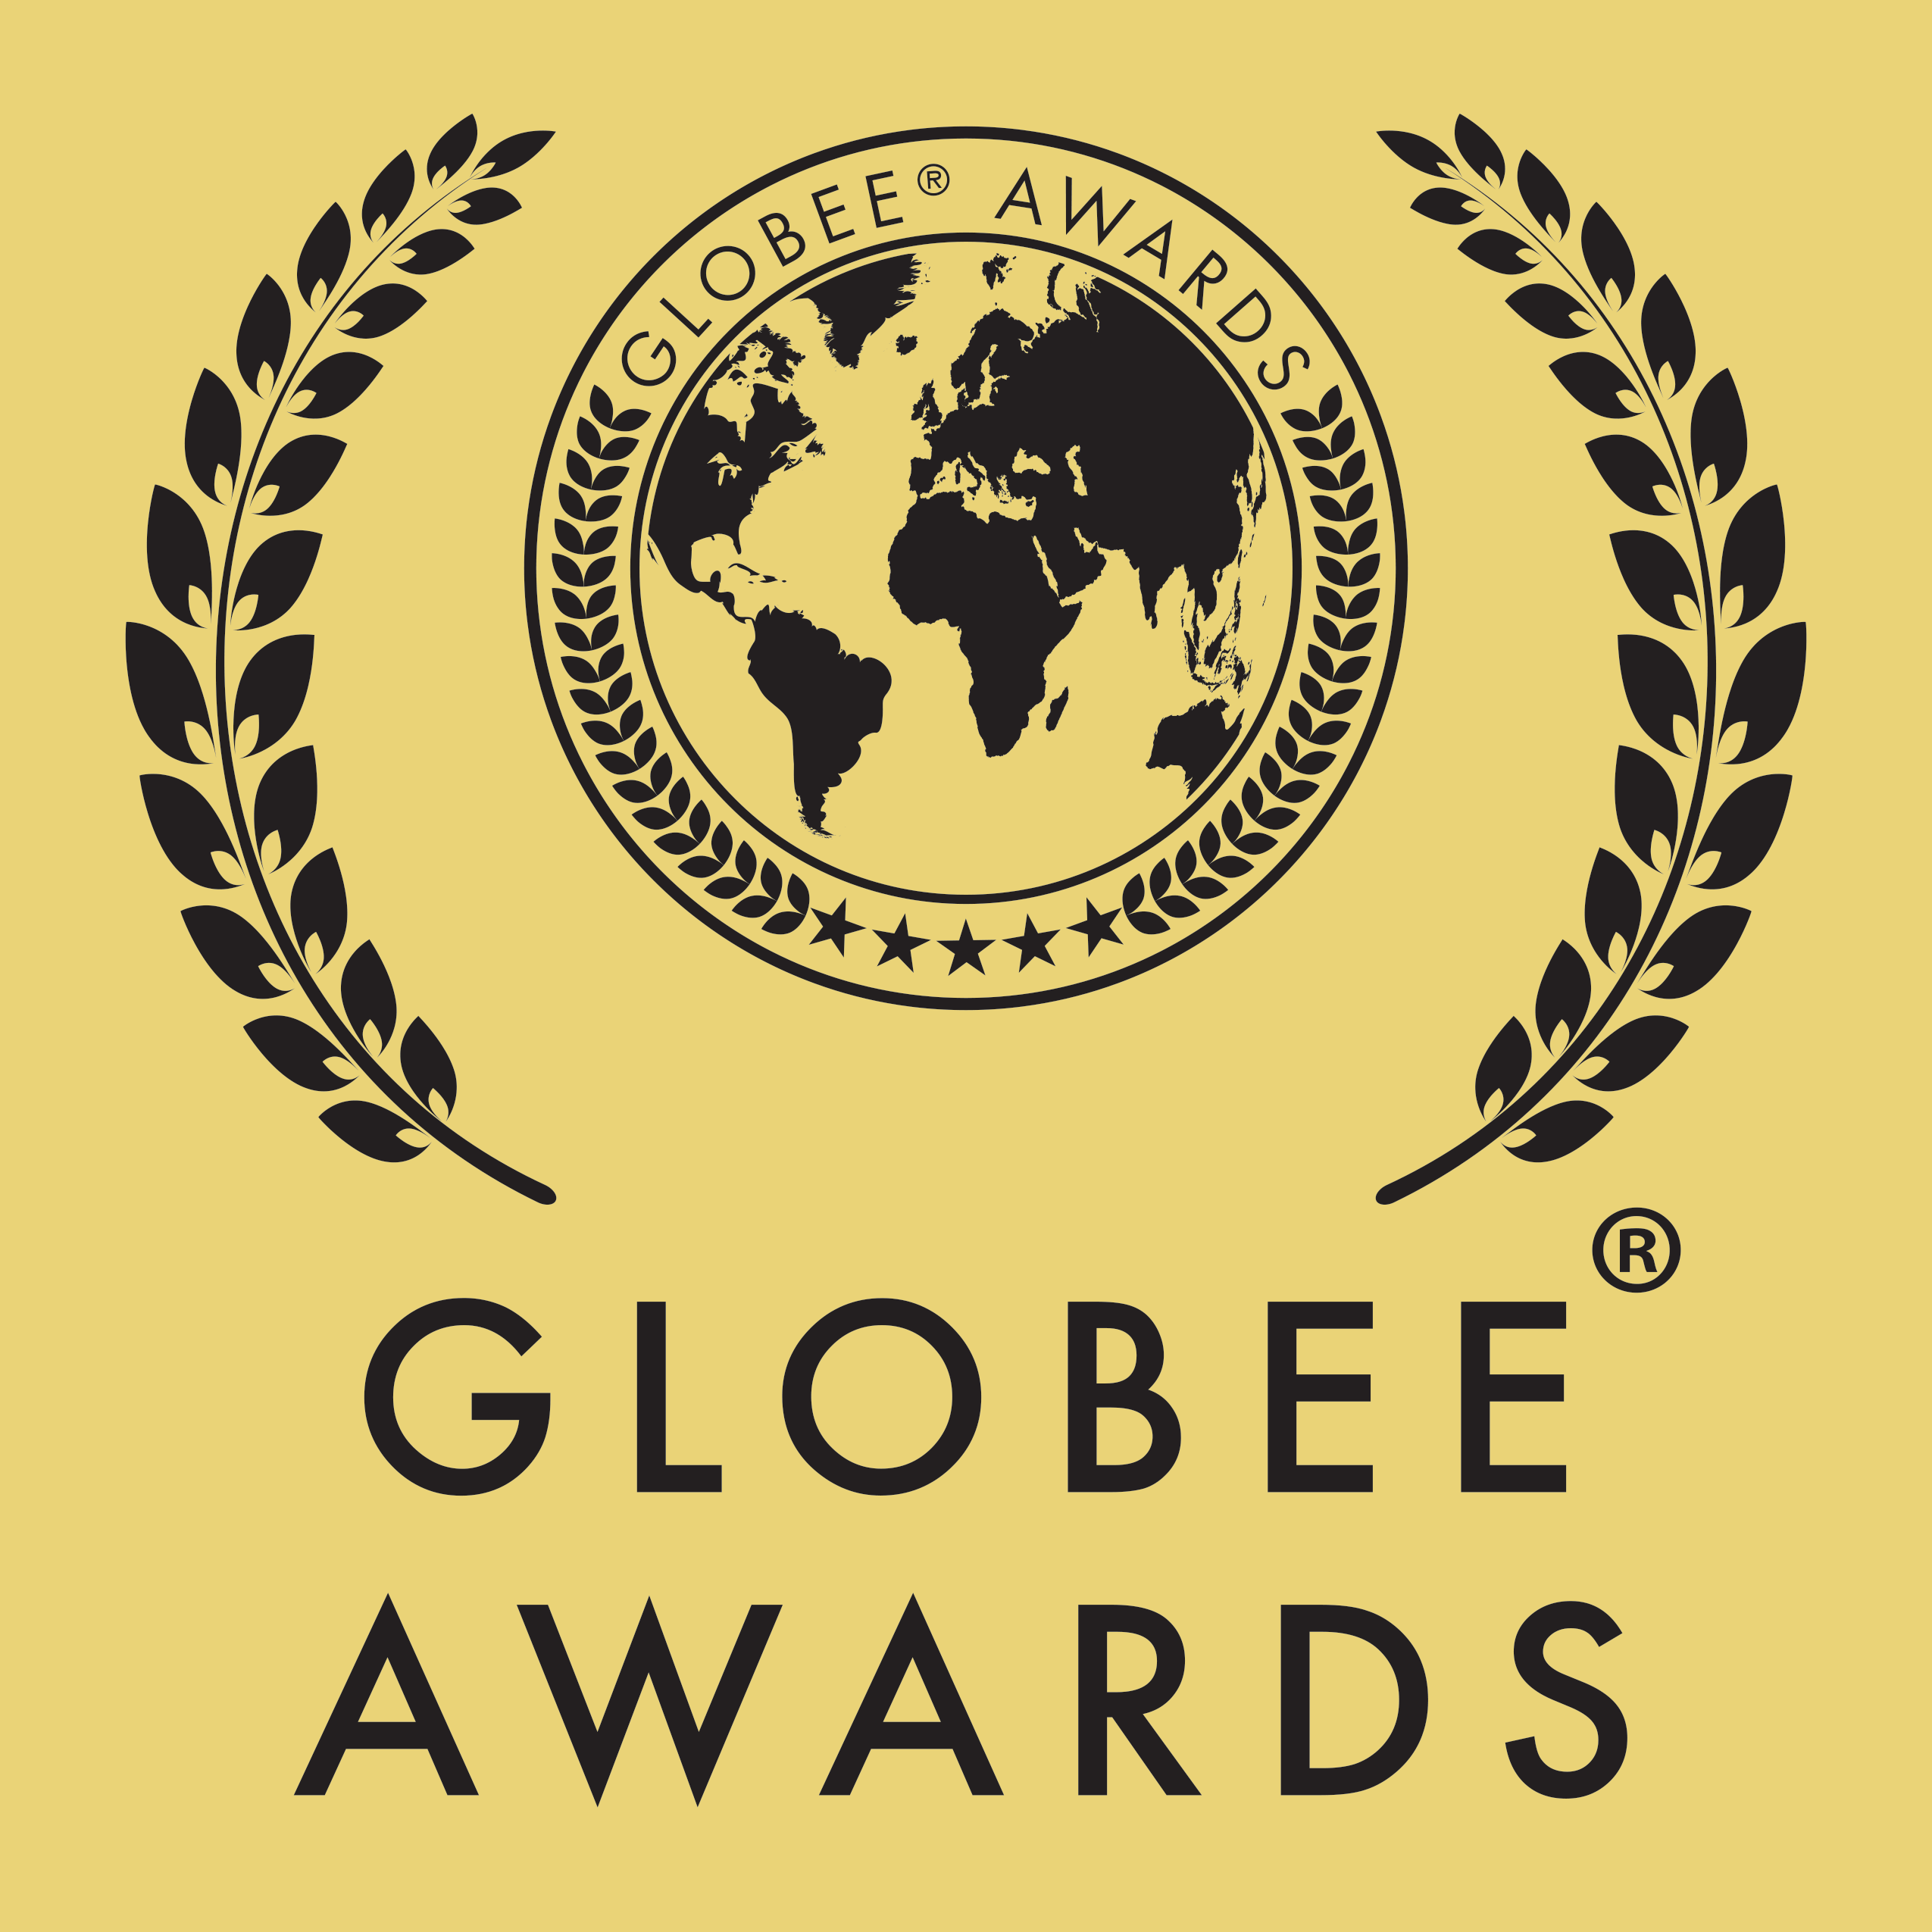 Premios Globee